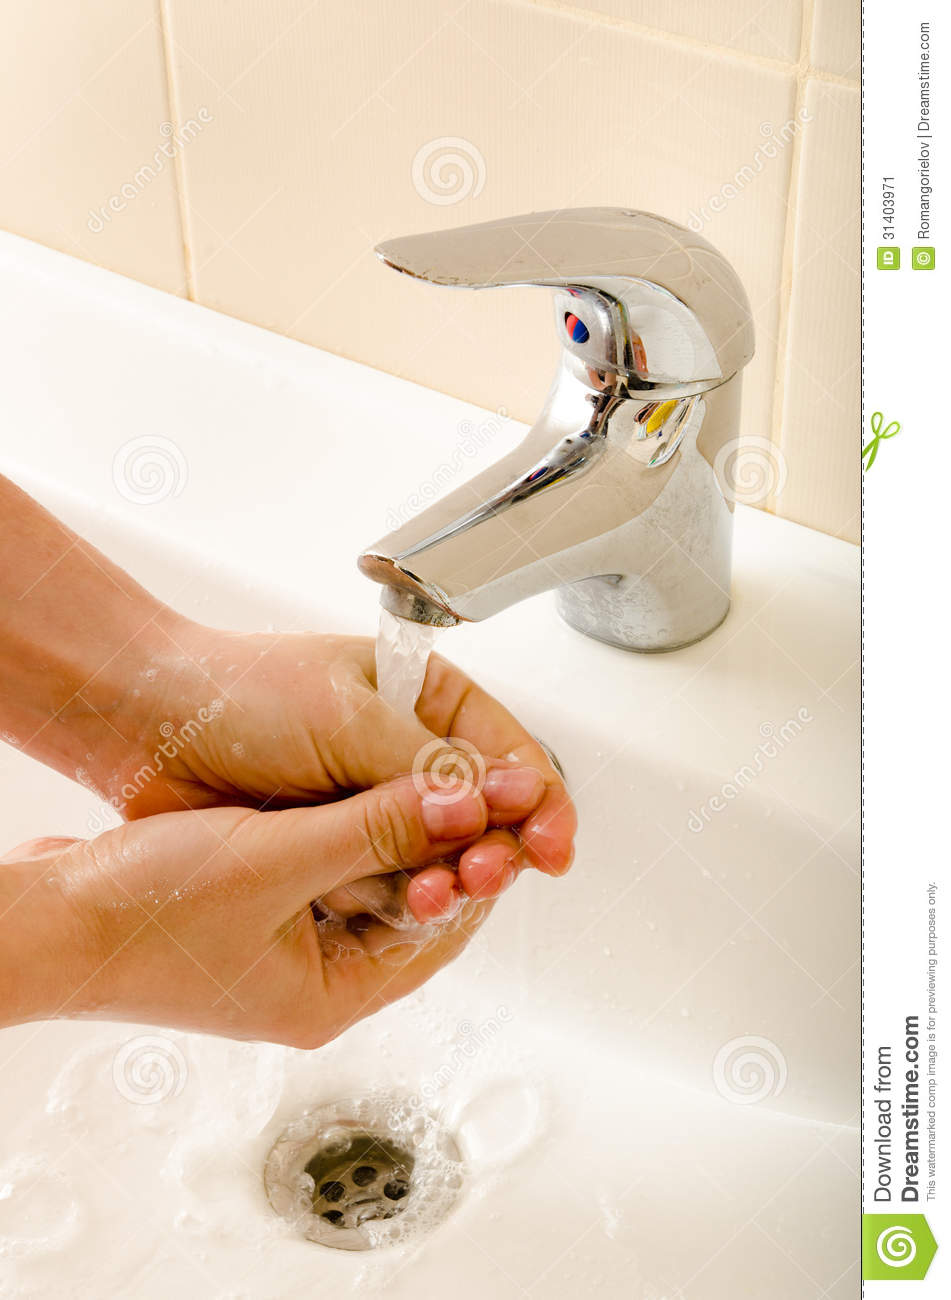 Hand Washing Stock Image   Image  31403971